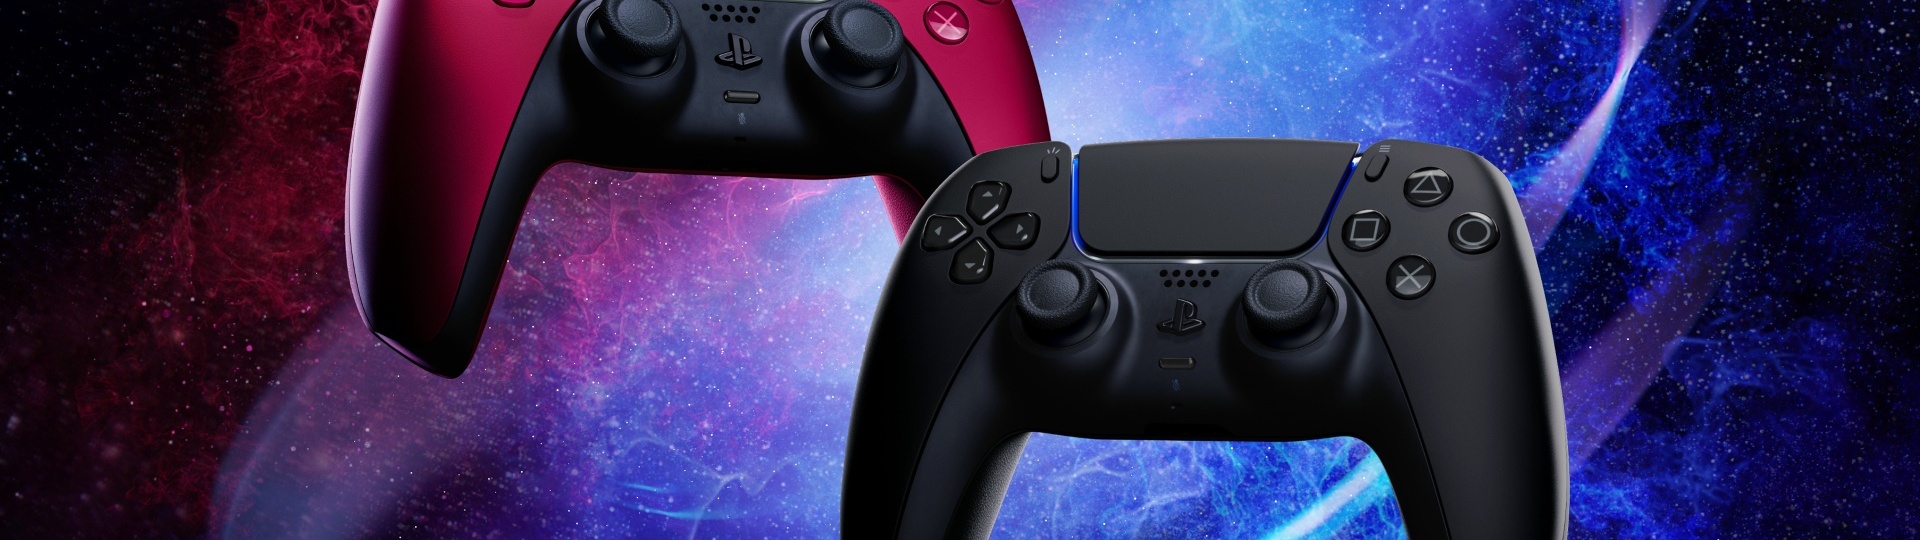 Sony ukázalo dvě nové barvy ovladače DualSense | Novinky